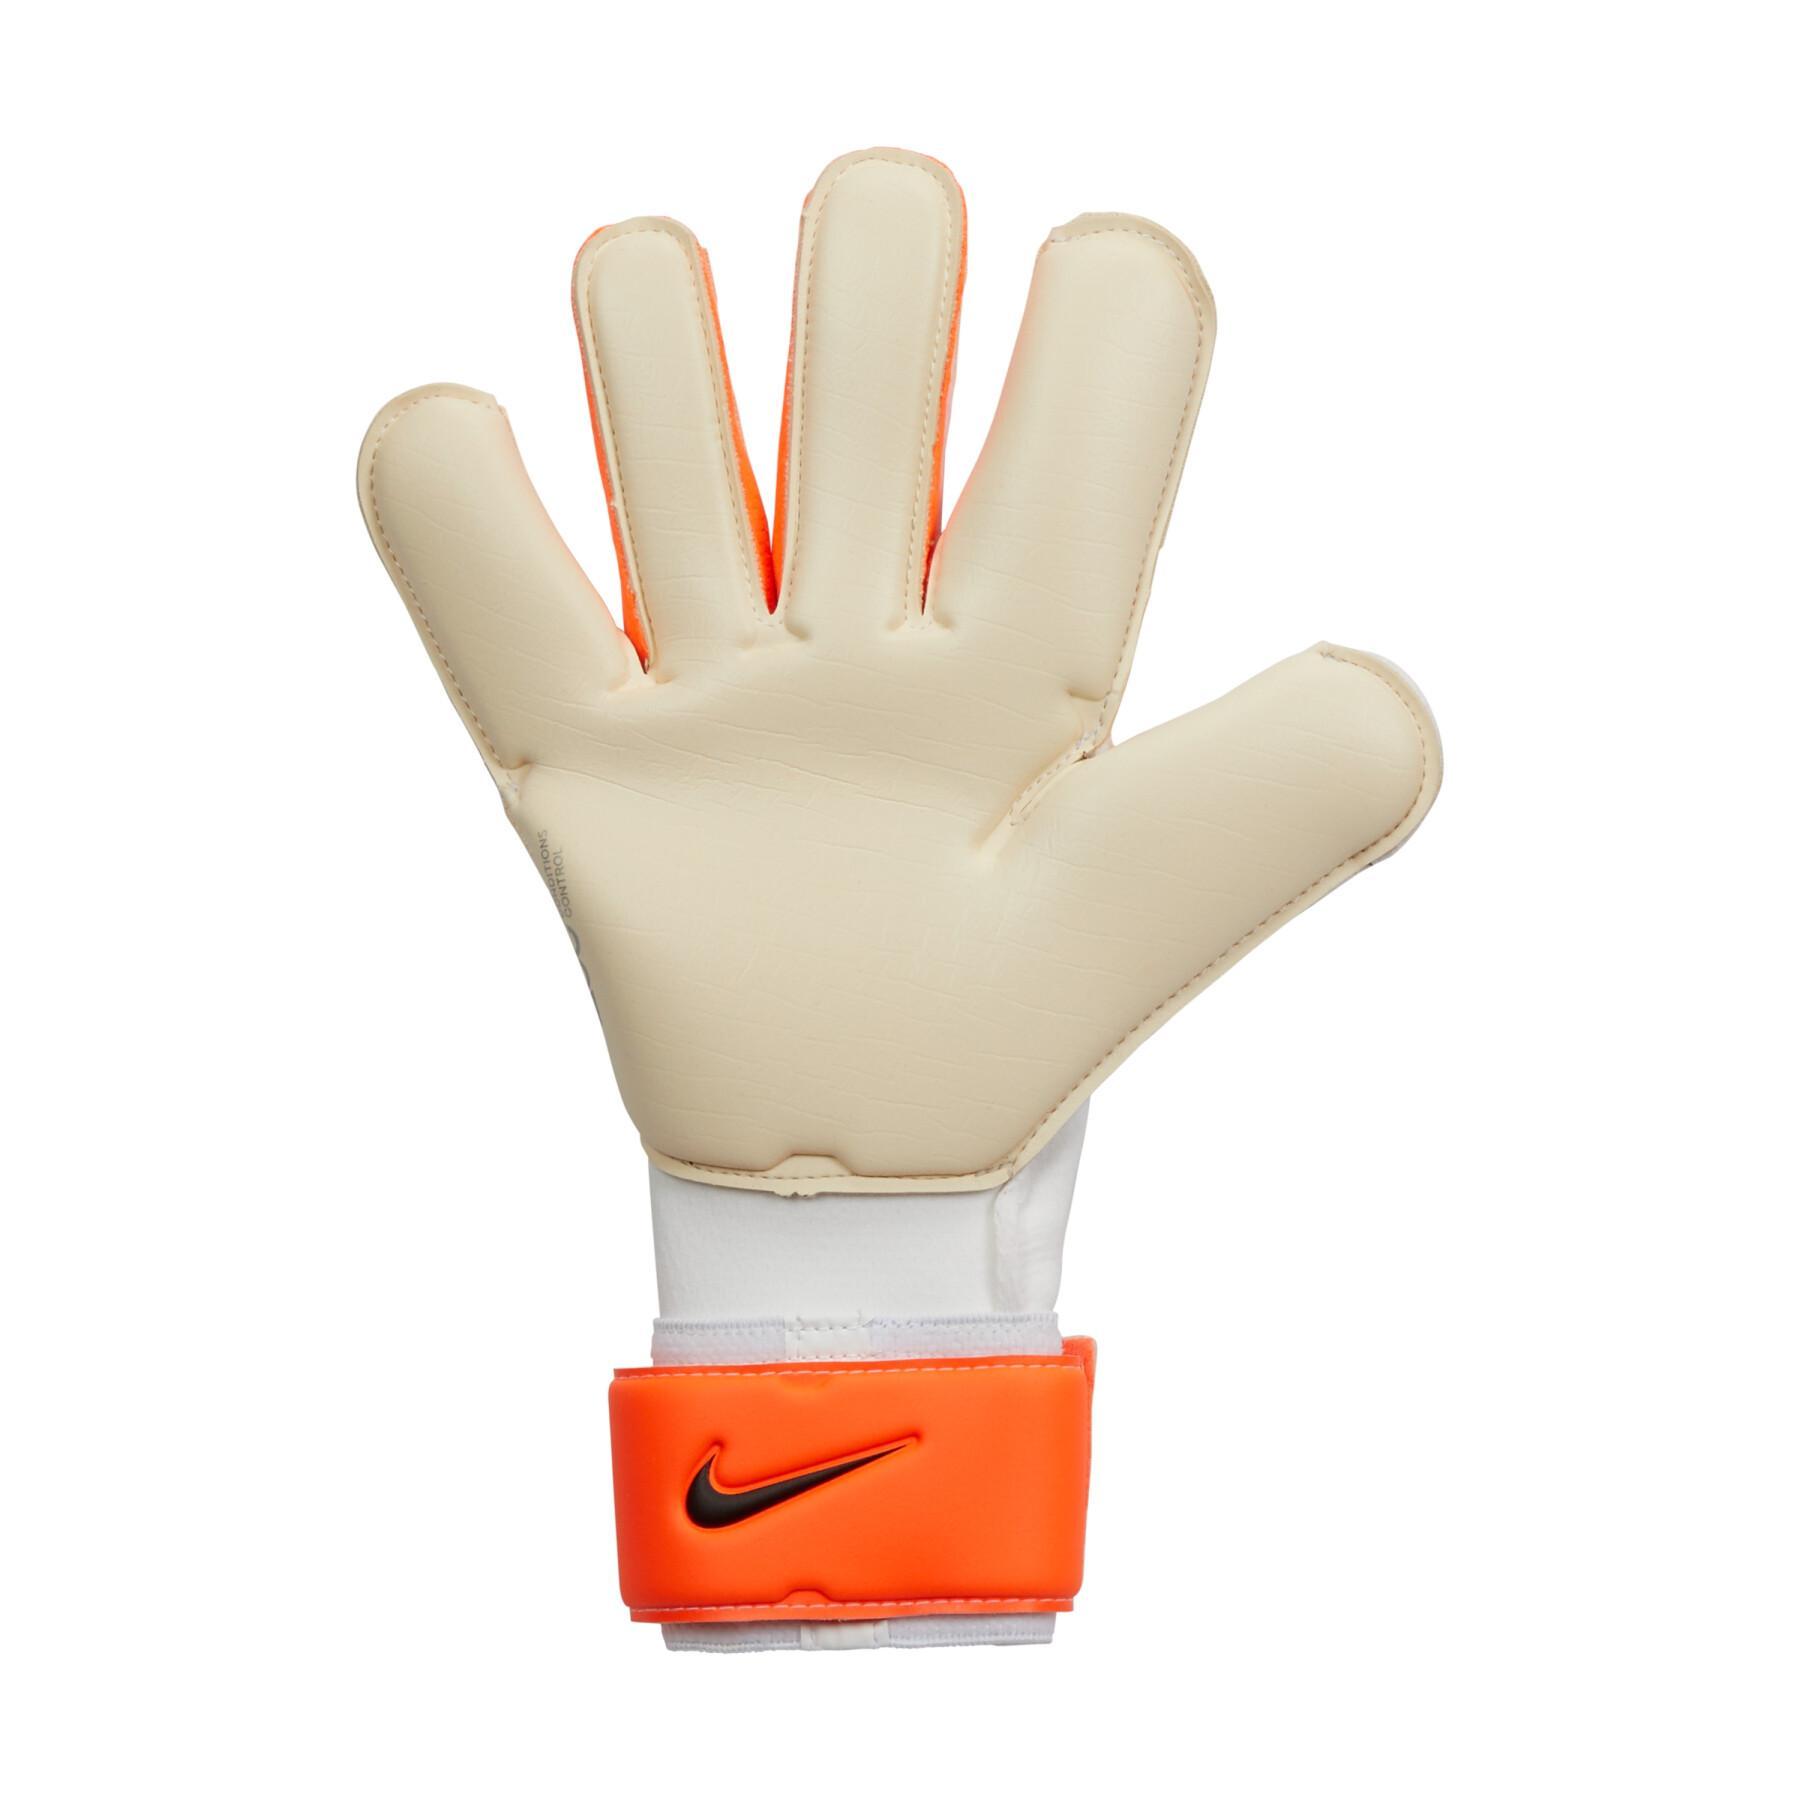 Rękawice bramkarskie Nike Grip3